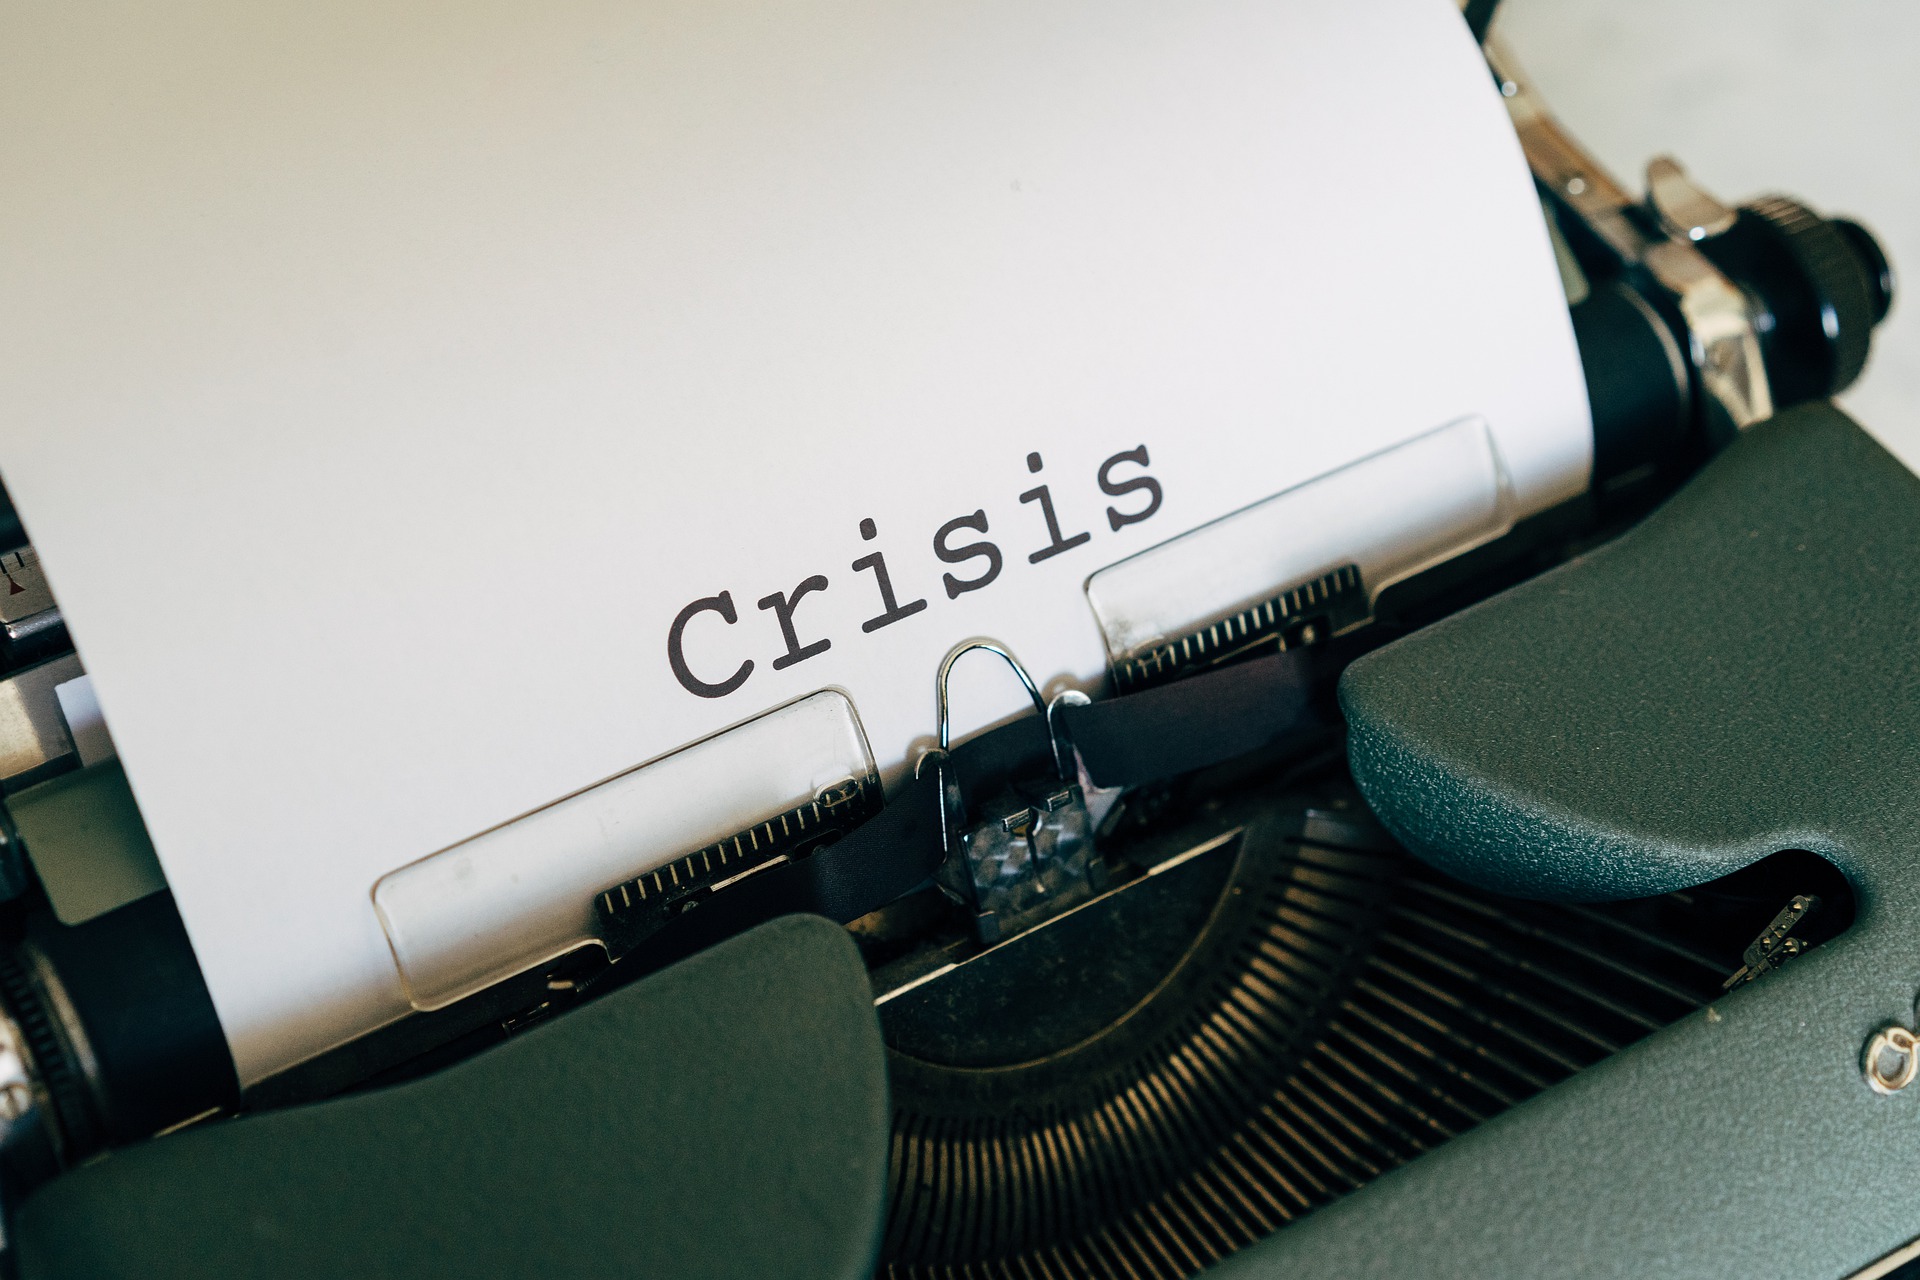 Krisen PR Schriftzug Crisis Schreibmaschine